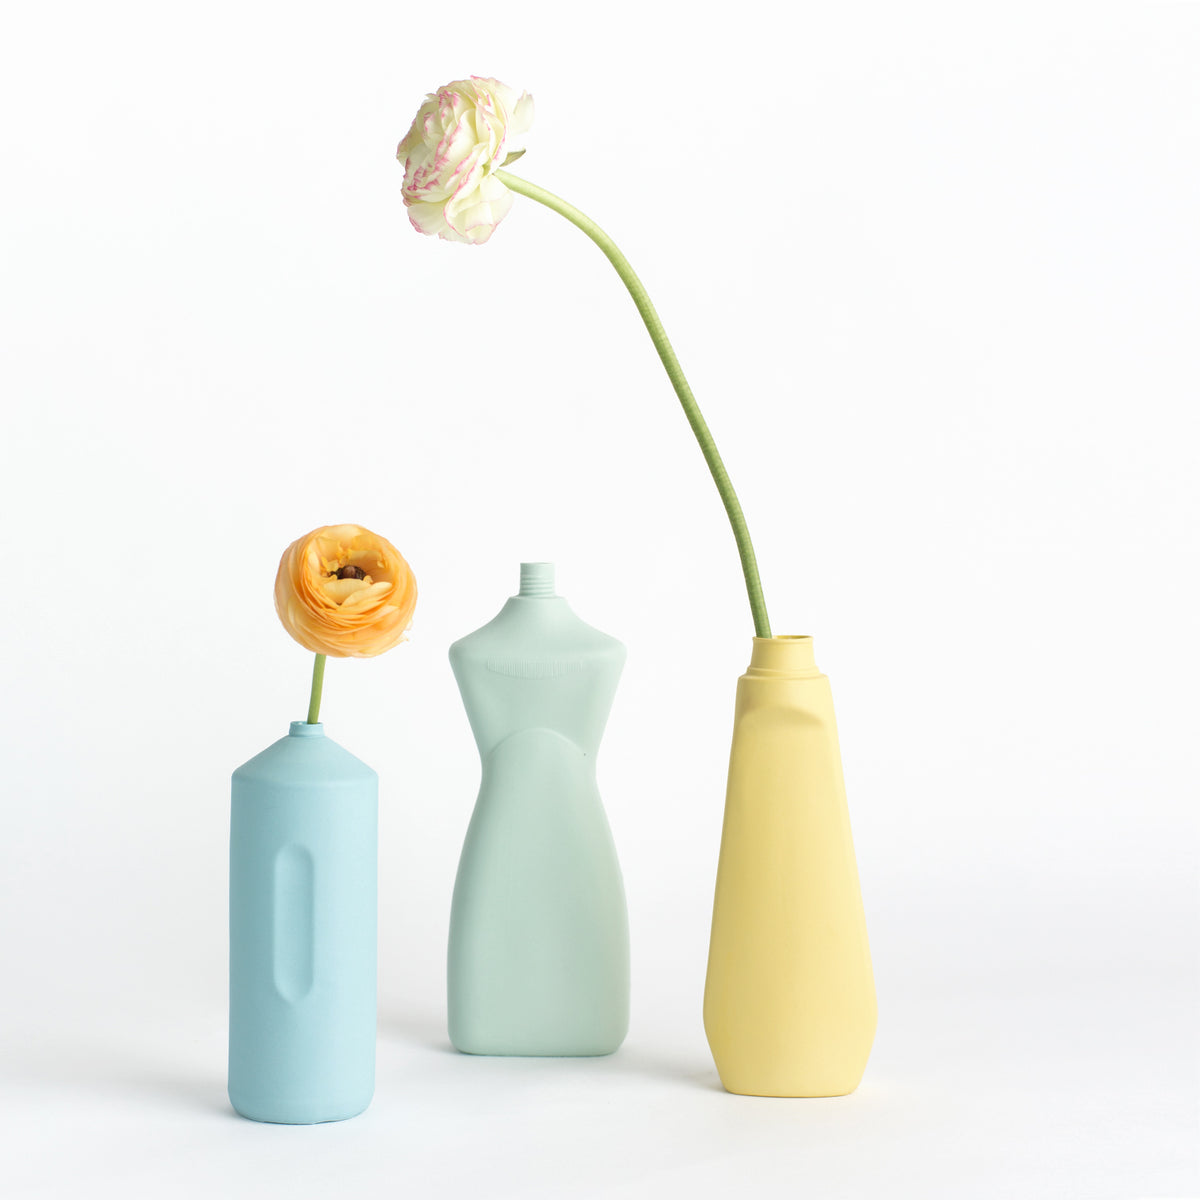 Porzellan-Vase #2 von Foekje Fleur bei Wilhelm die 3.